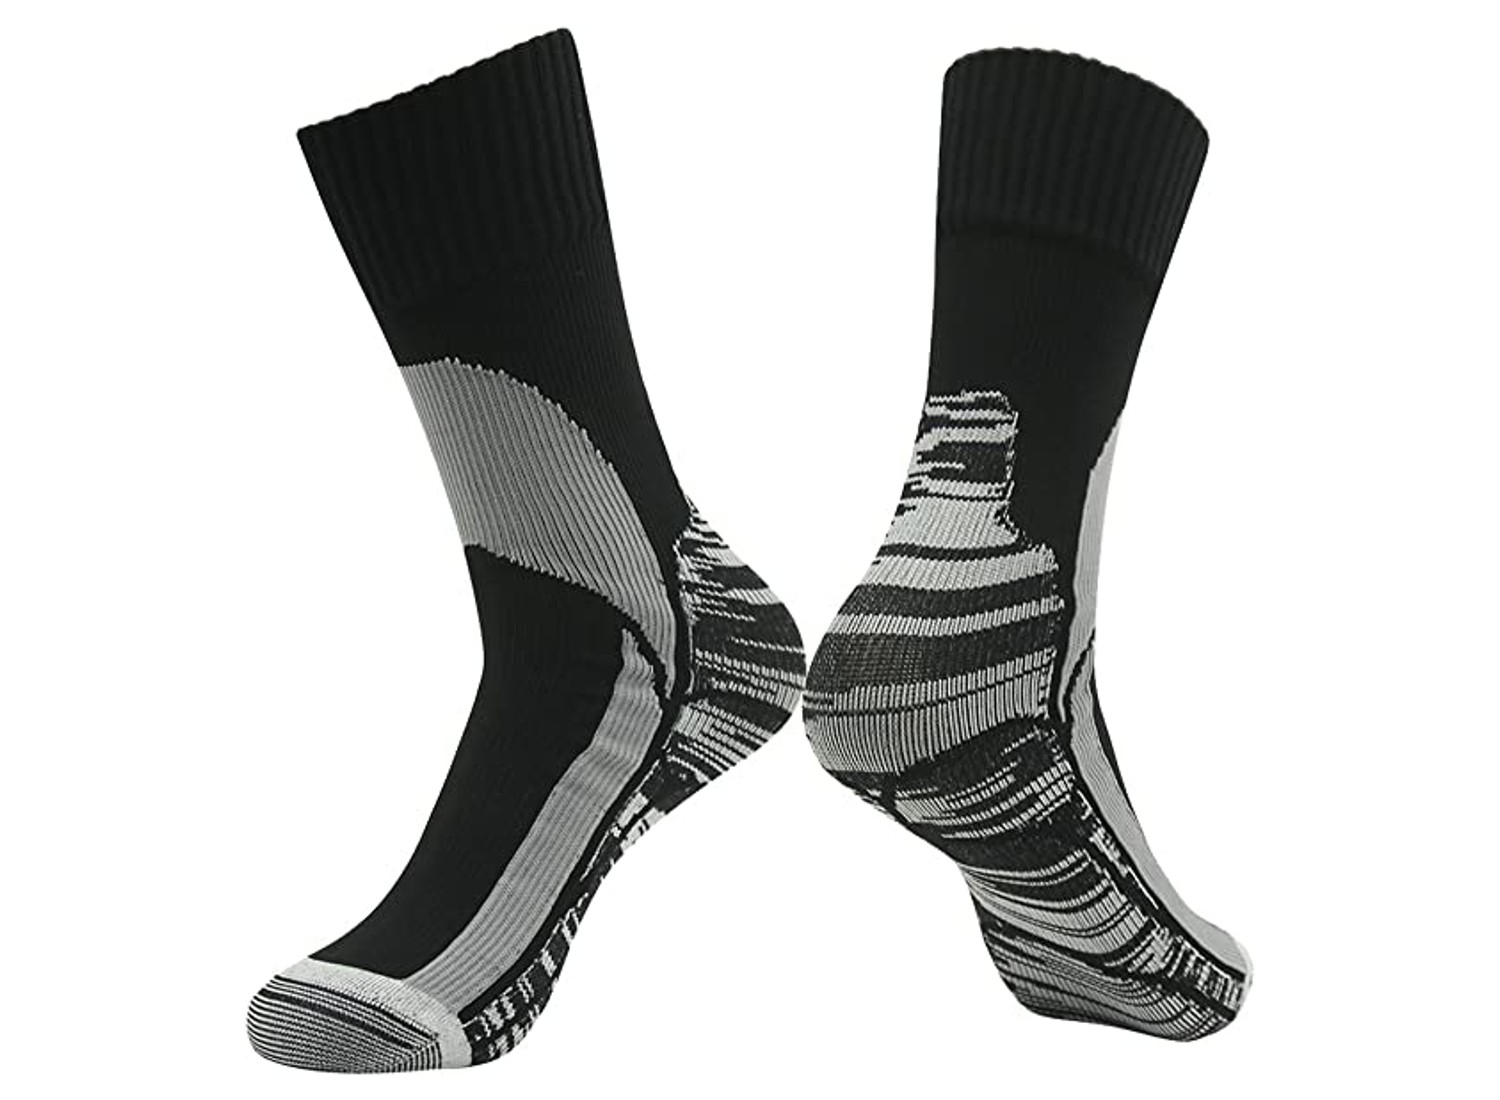 waterproof socks review